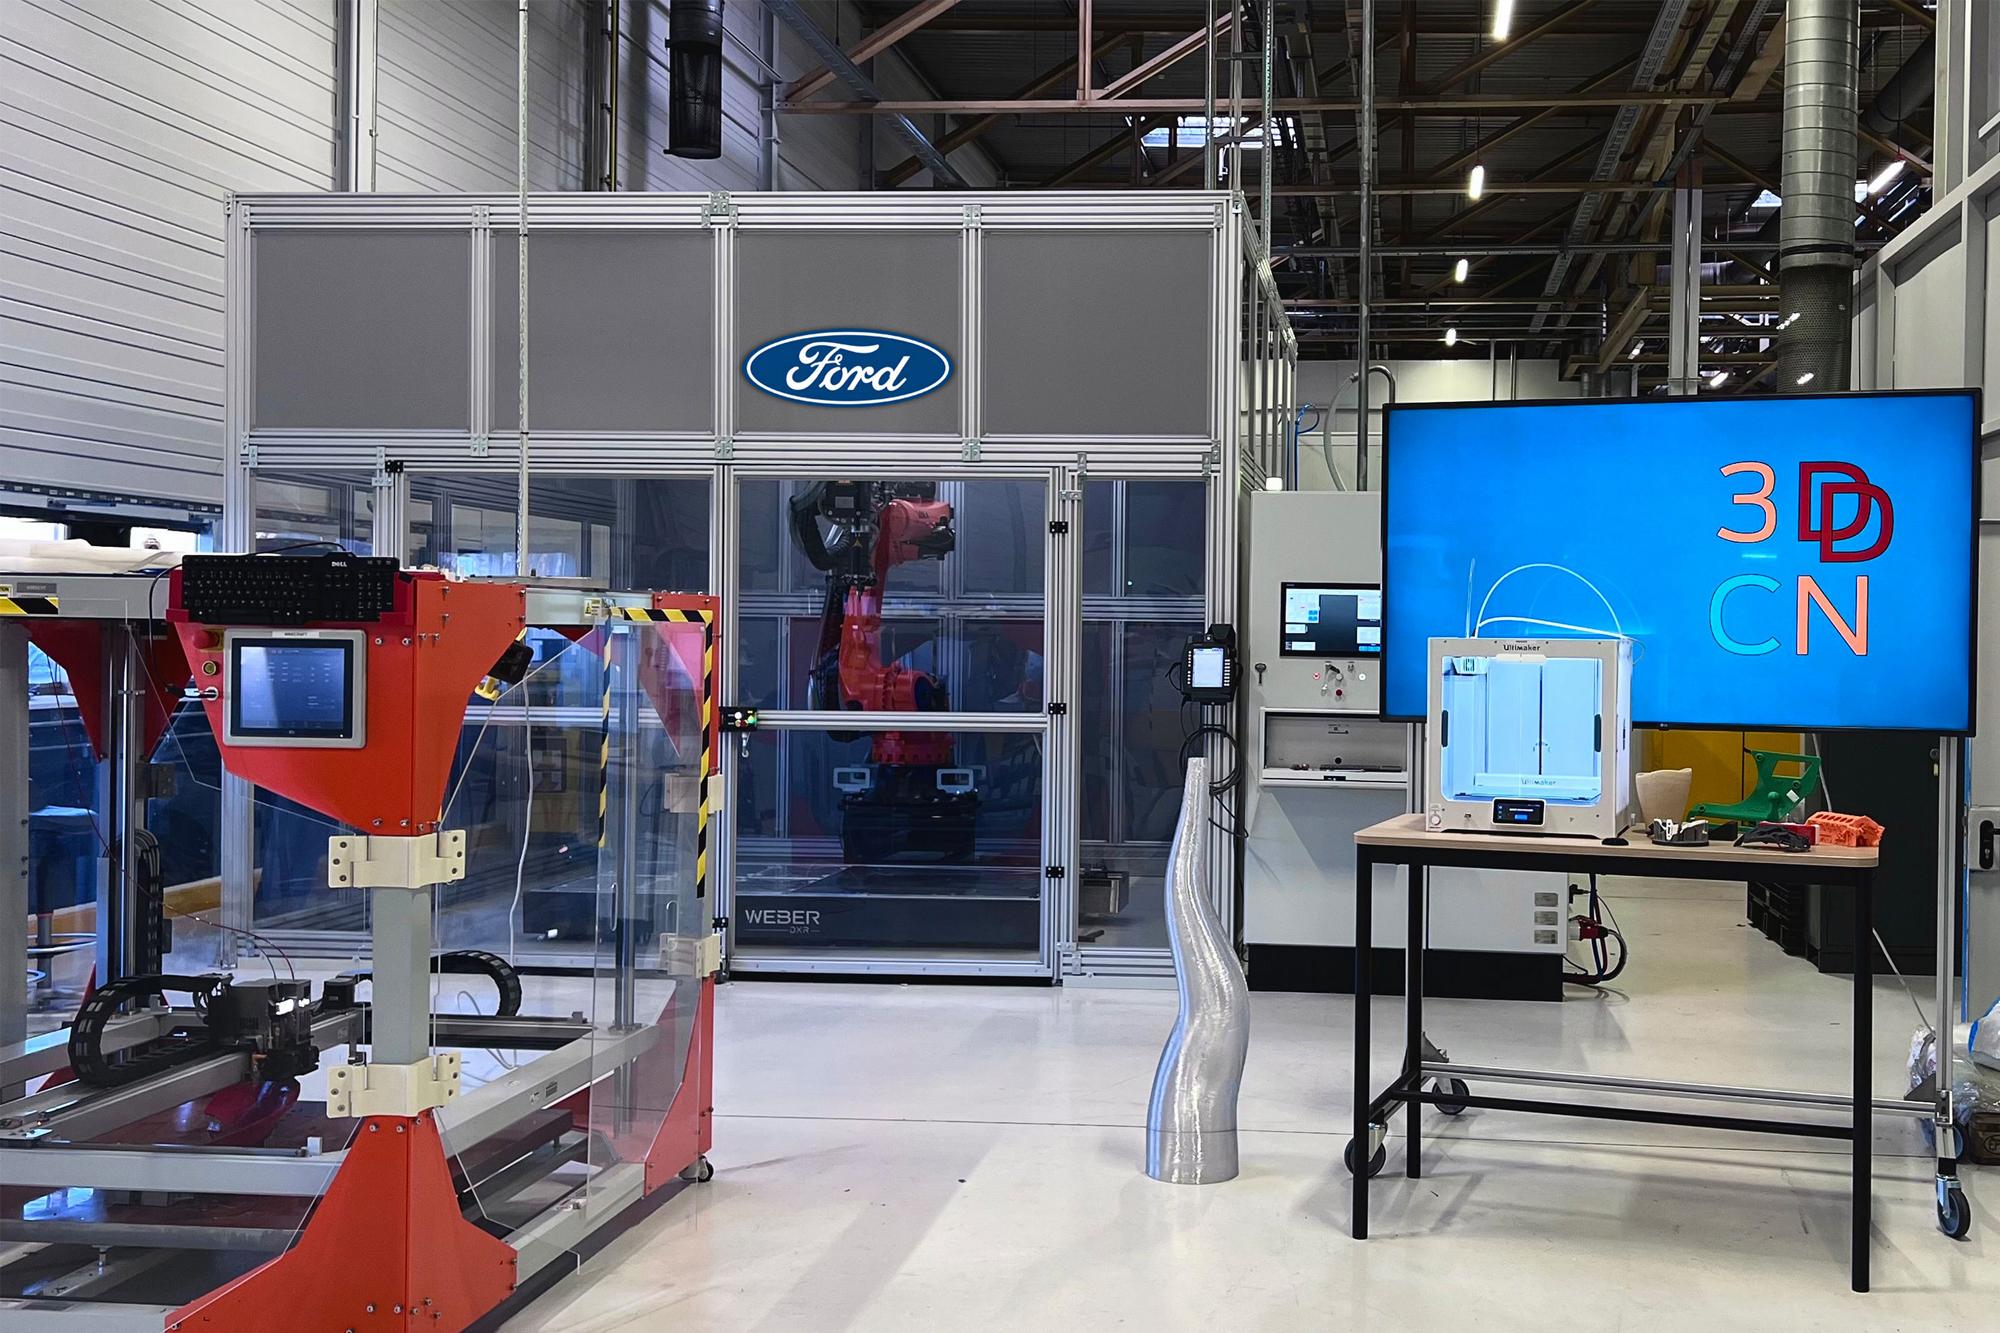 Κέντρο 3D εκτύπωσης από την Ford